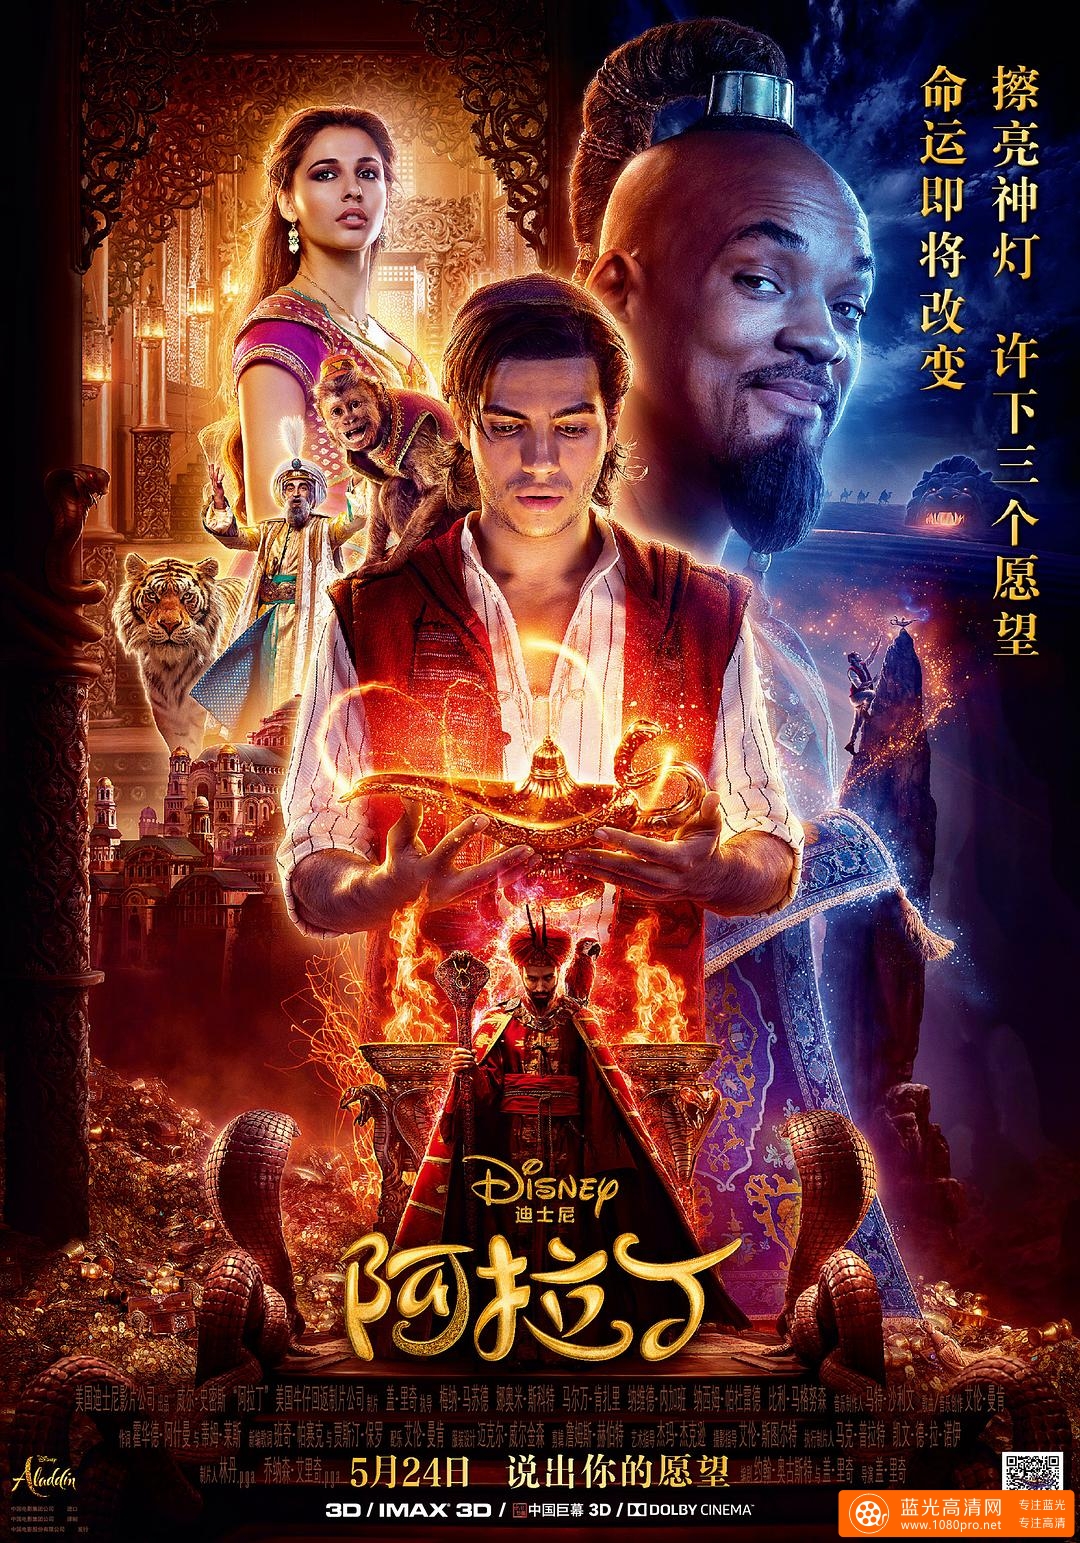 阿拉丁/阿拉丁真人版 Aladdin.2019.1080p.BluRay.x264.DTS-HD.MA.7.1-FGT 13.26GB